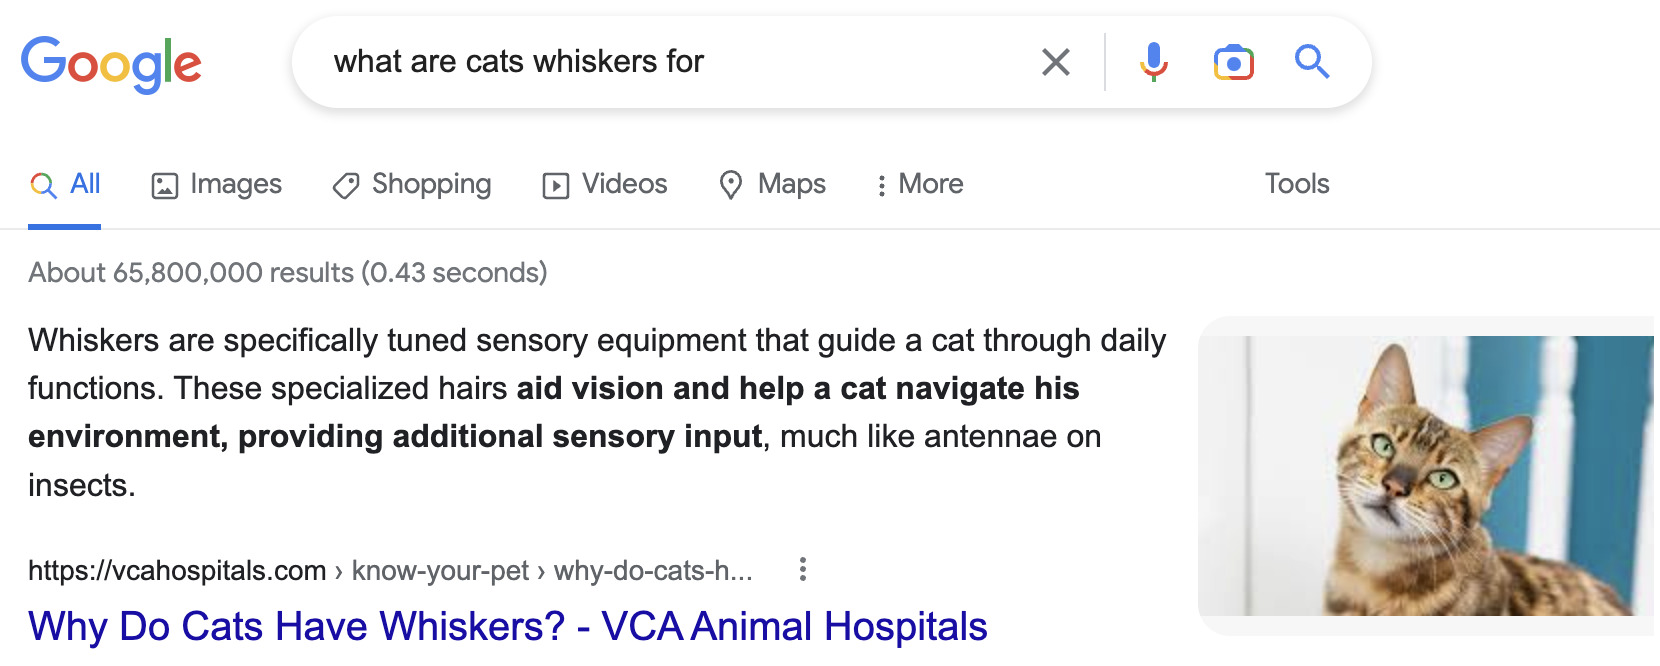 通过Google.com搜索“what are cats whiskers for”的精选摘要搜索结果